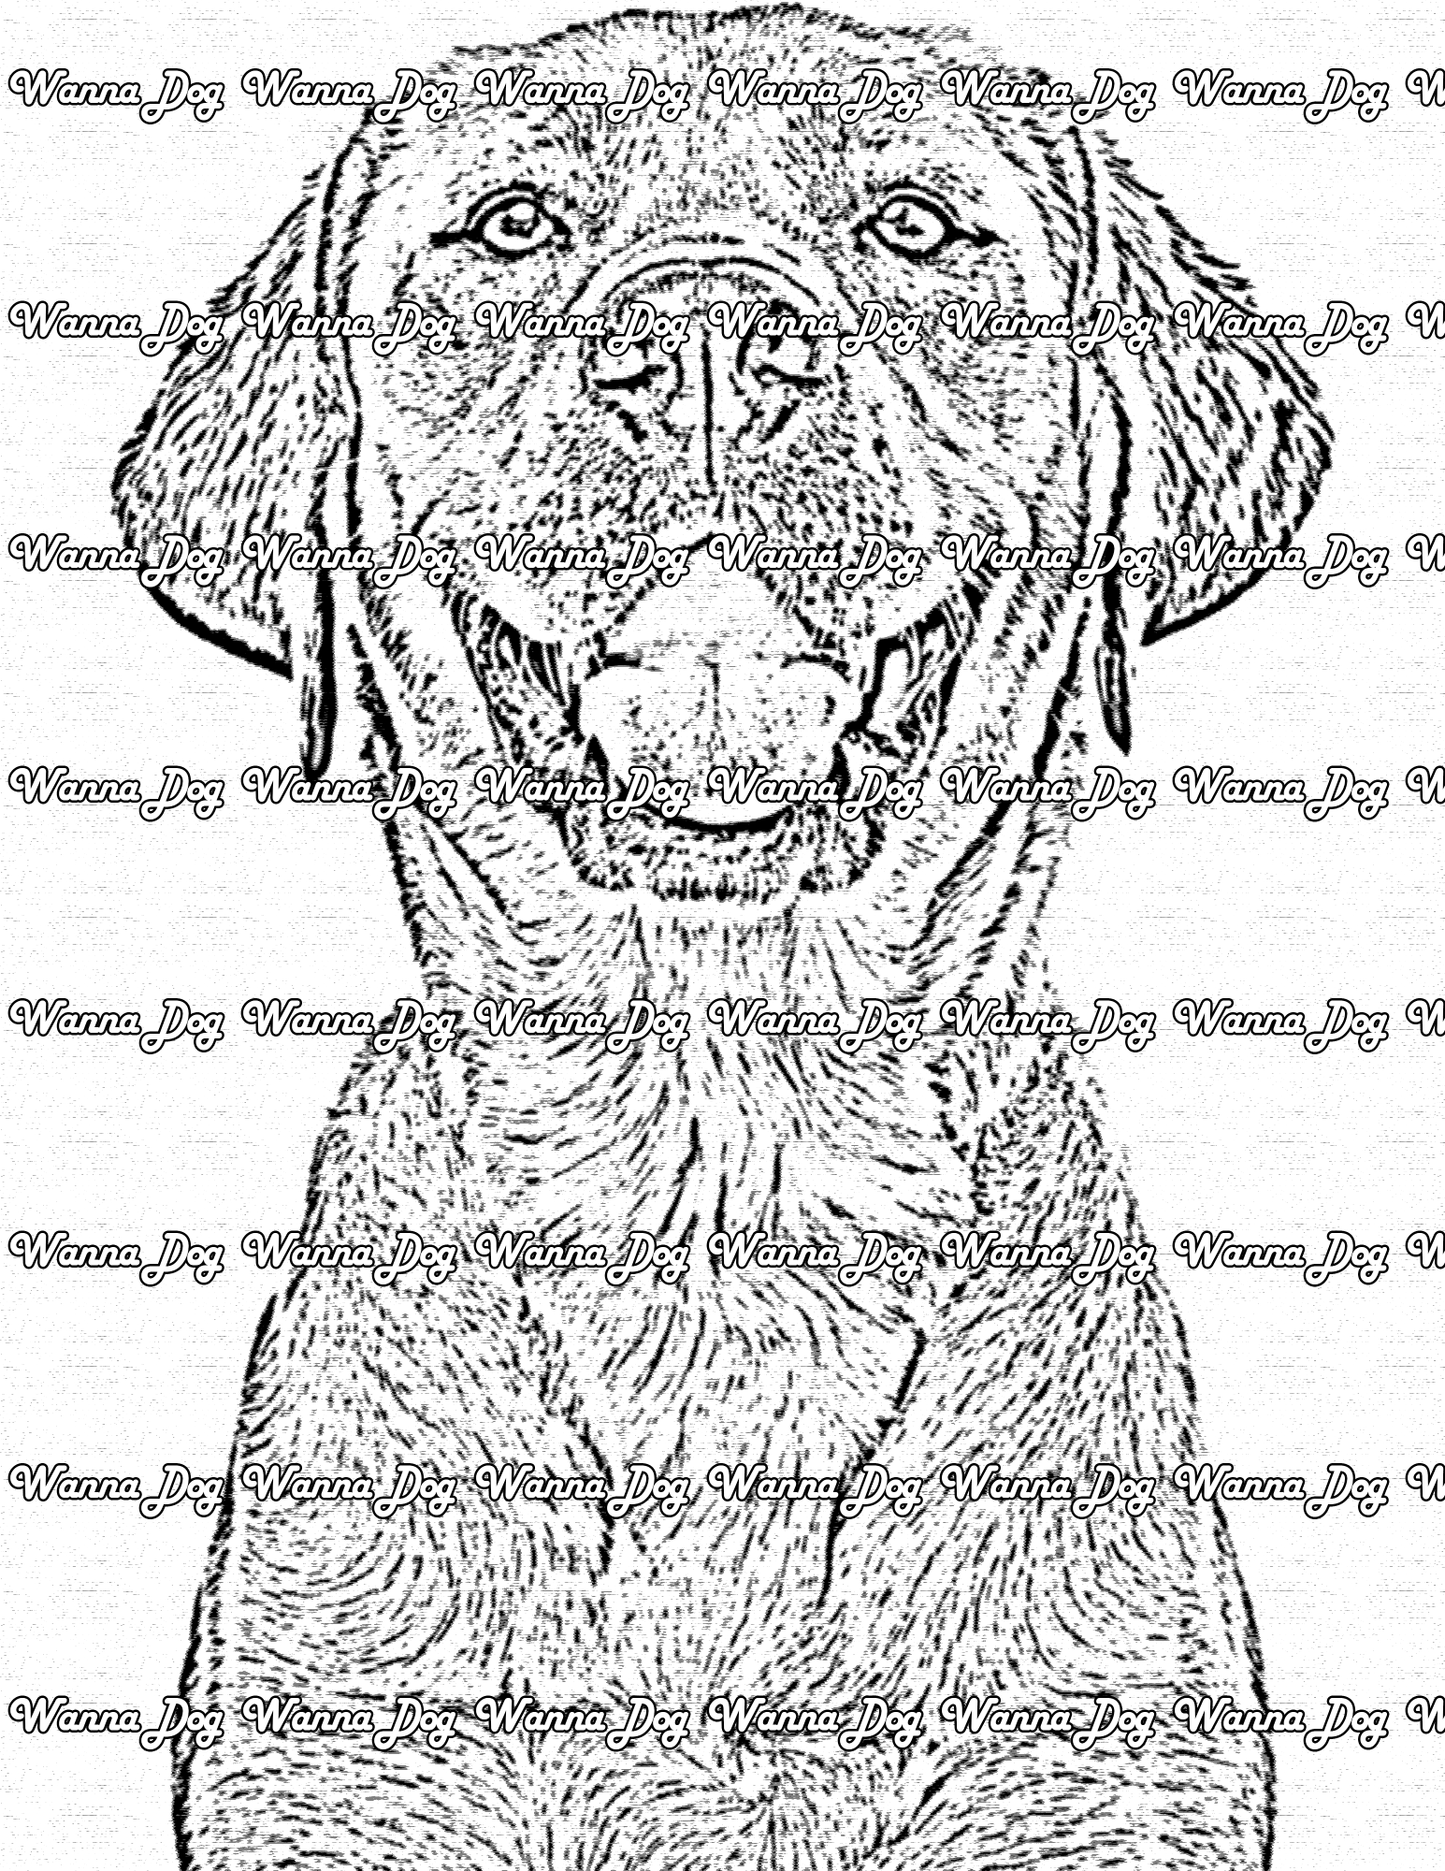 Labrador Retriever Coloring Page of a Labrador Retriever smiling